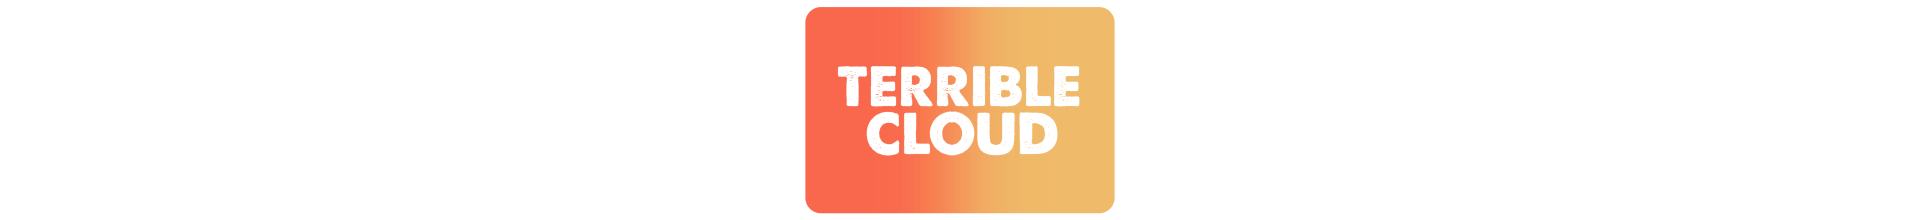 Gamme Terrible Cloud